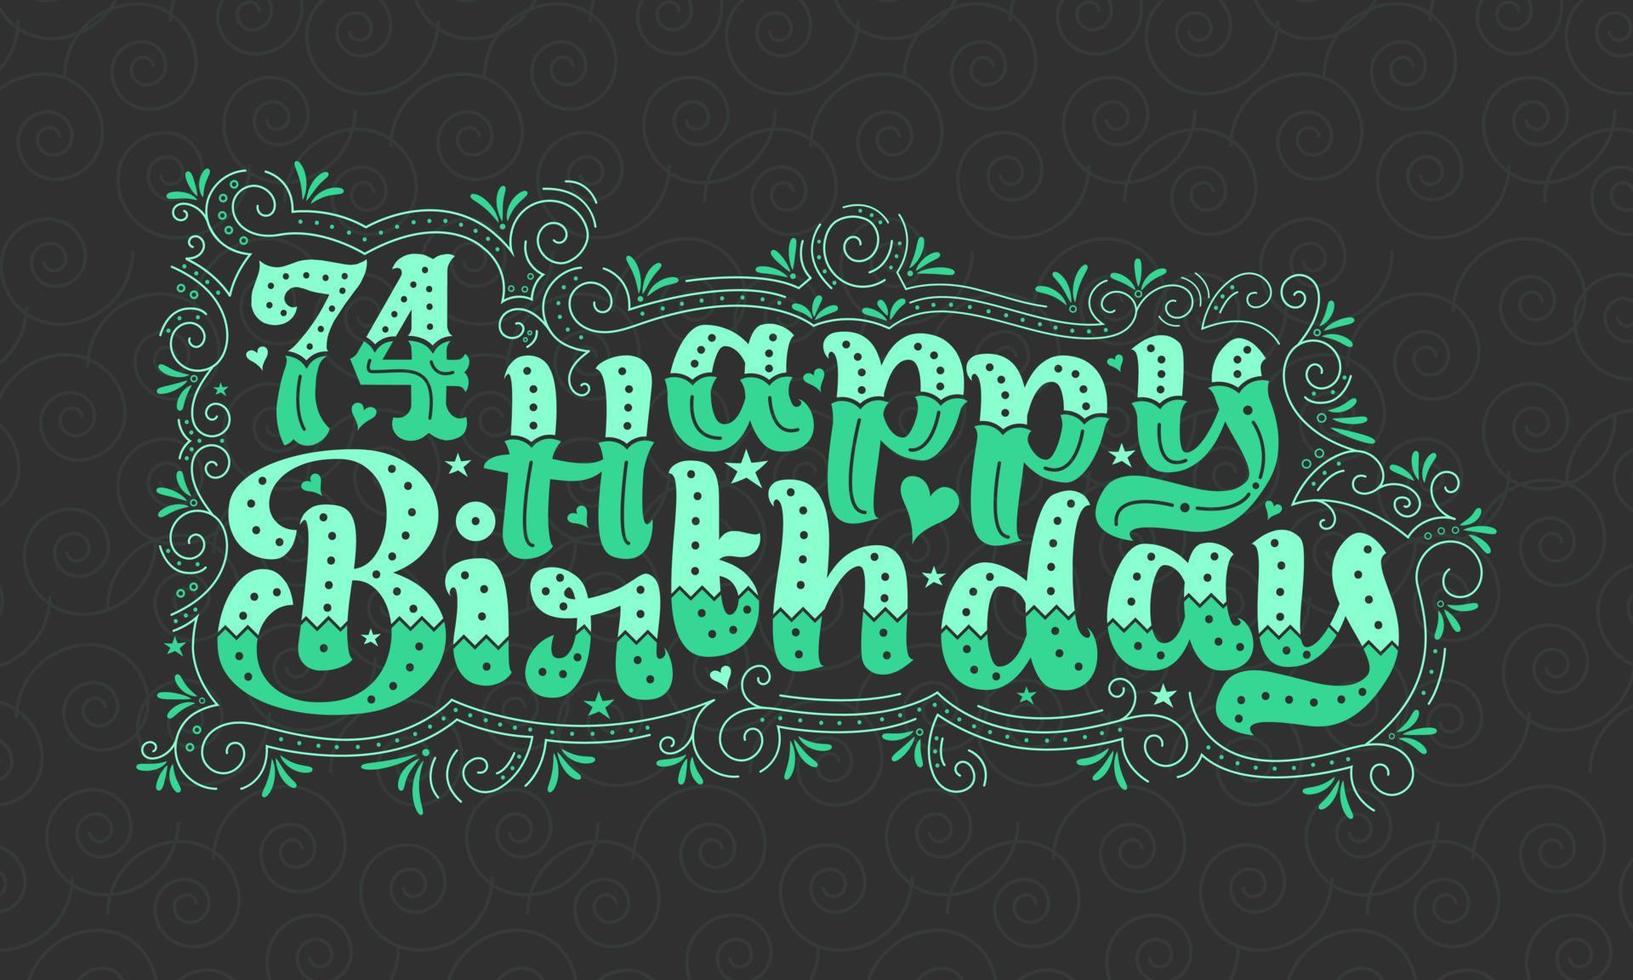 74:e grattis på födelsedagen bokstäver, 74 år födelsedag vacker typografi design med gröna prickar, linjer och blad. vektor